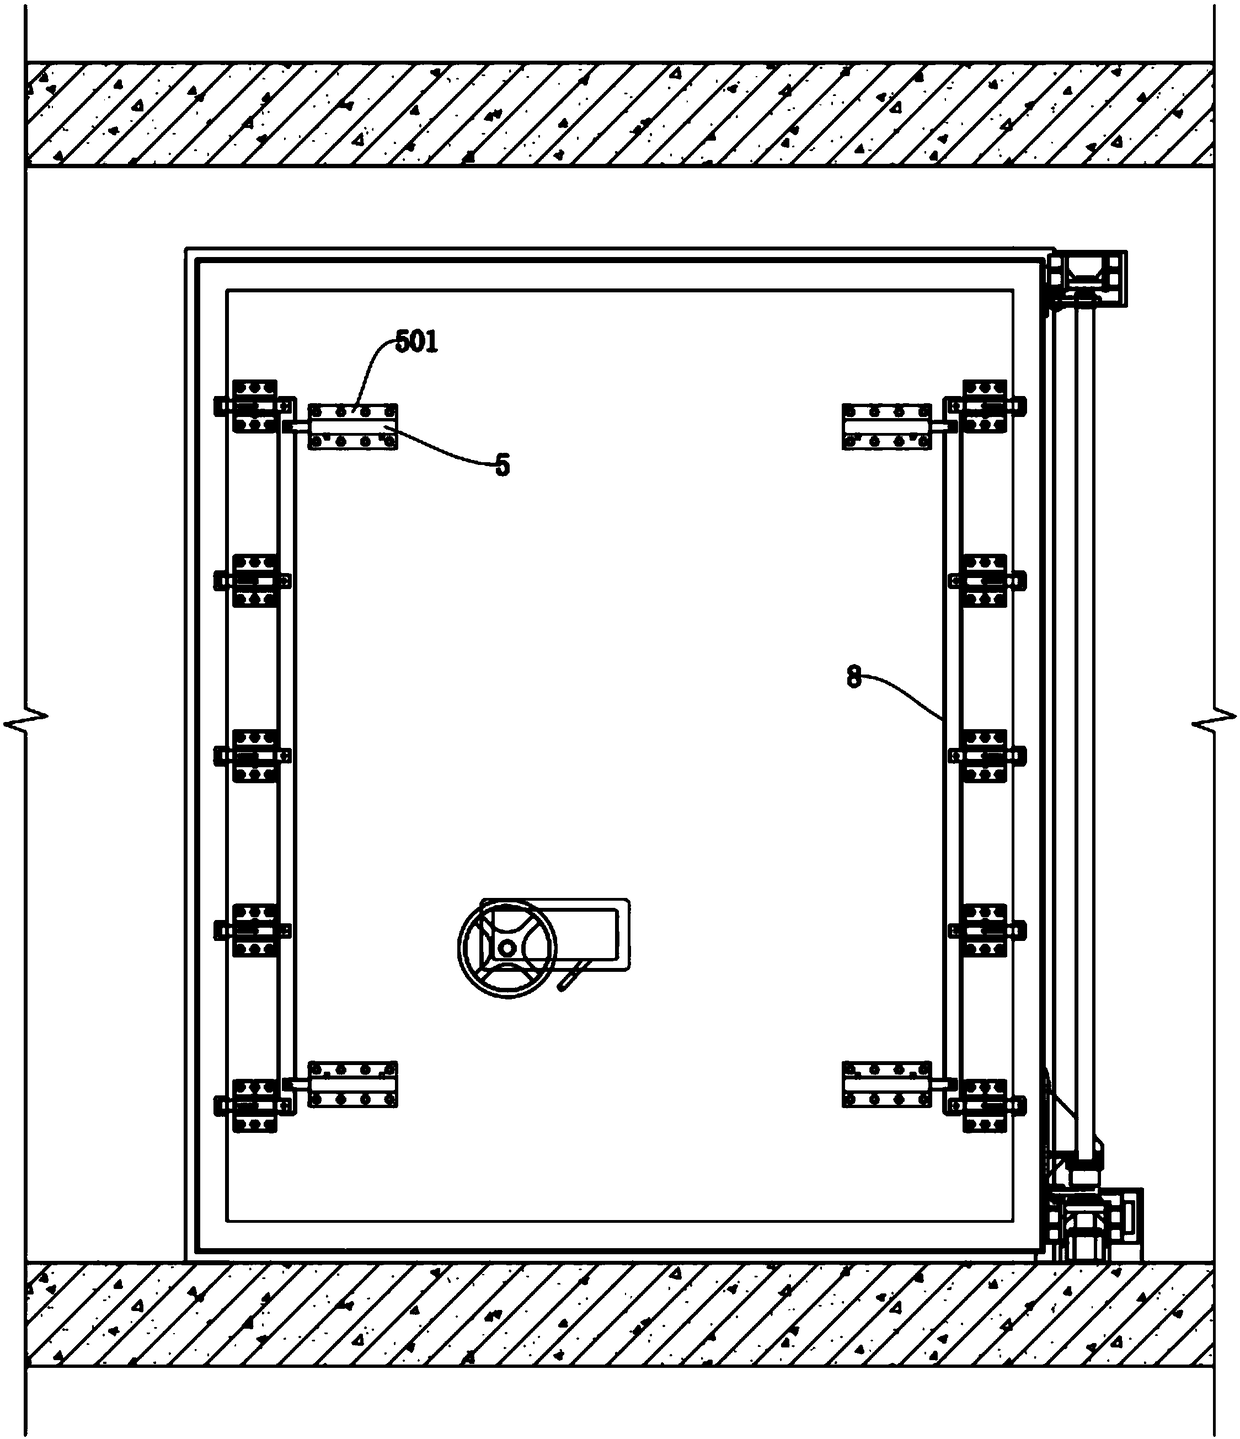 Linkage locking anti-rebounding civil defense door utilizing fluid pressure